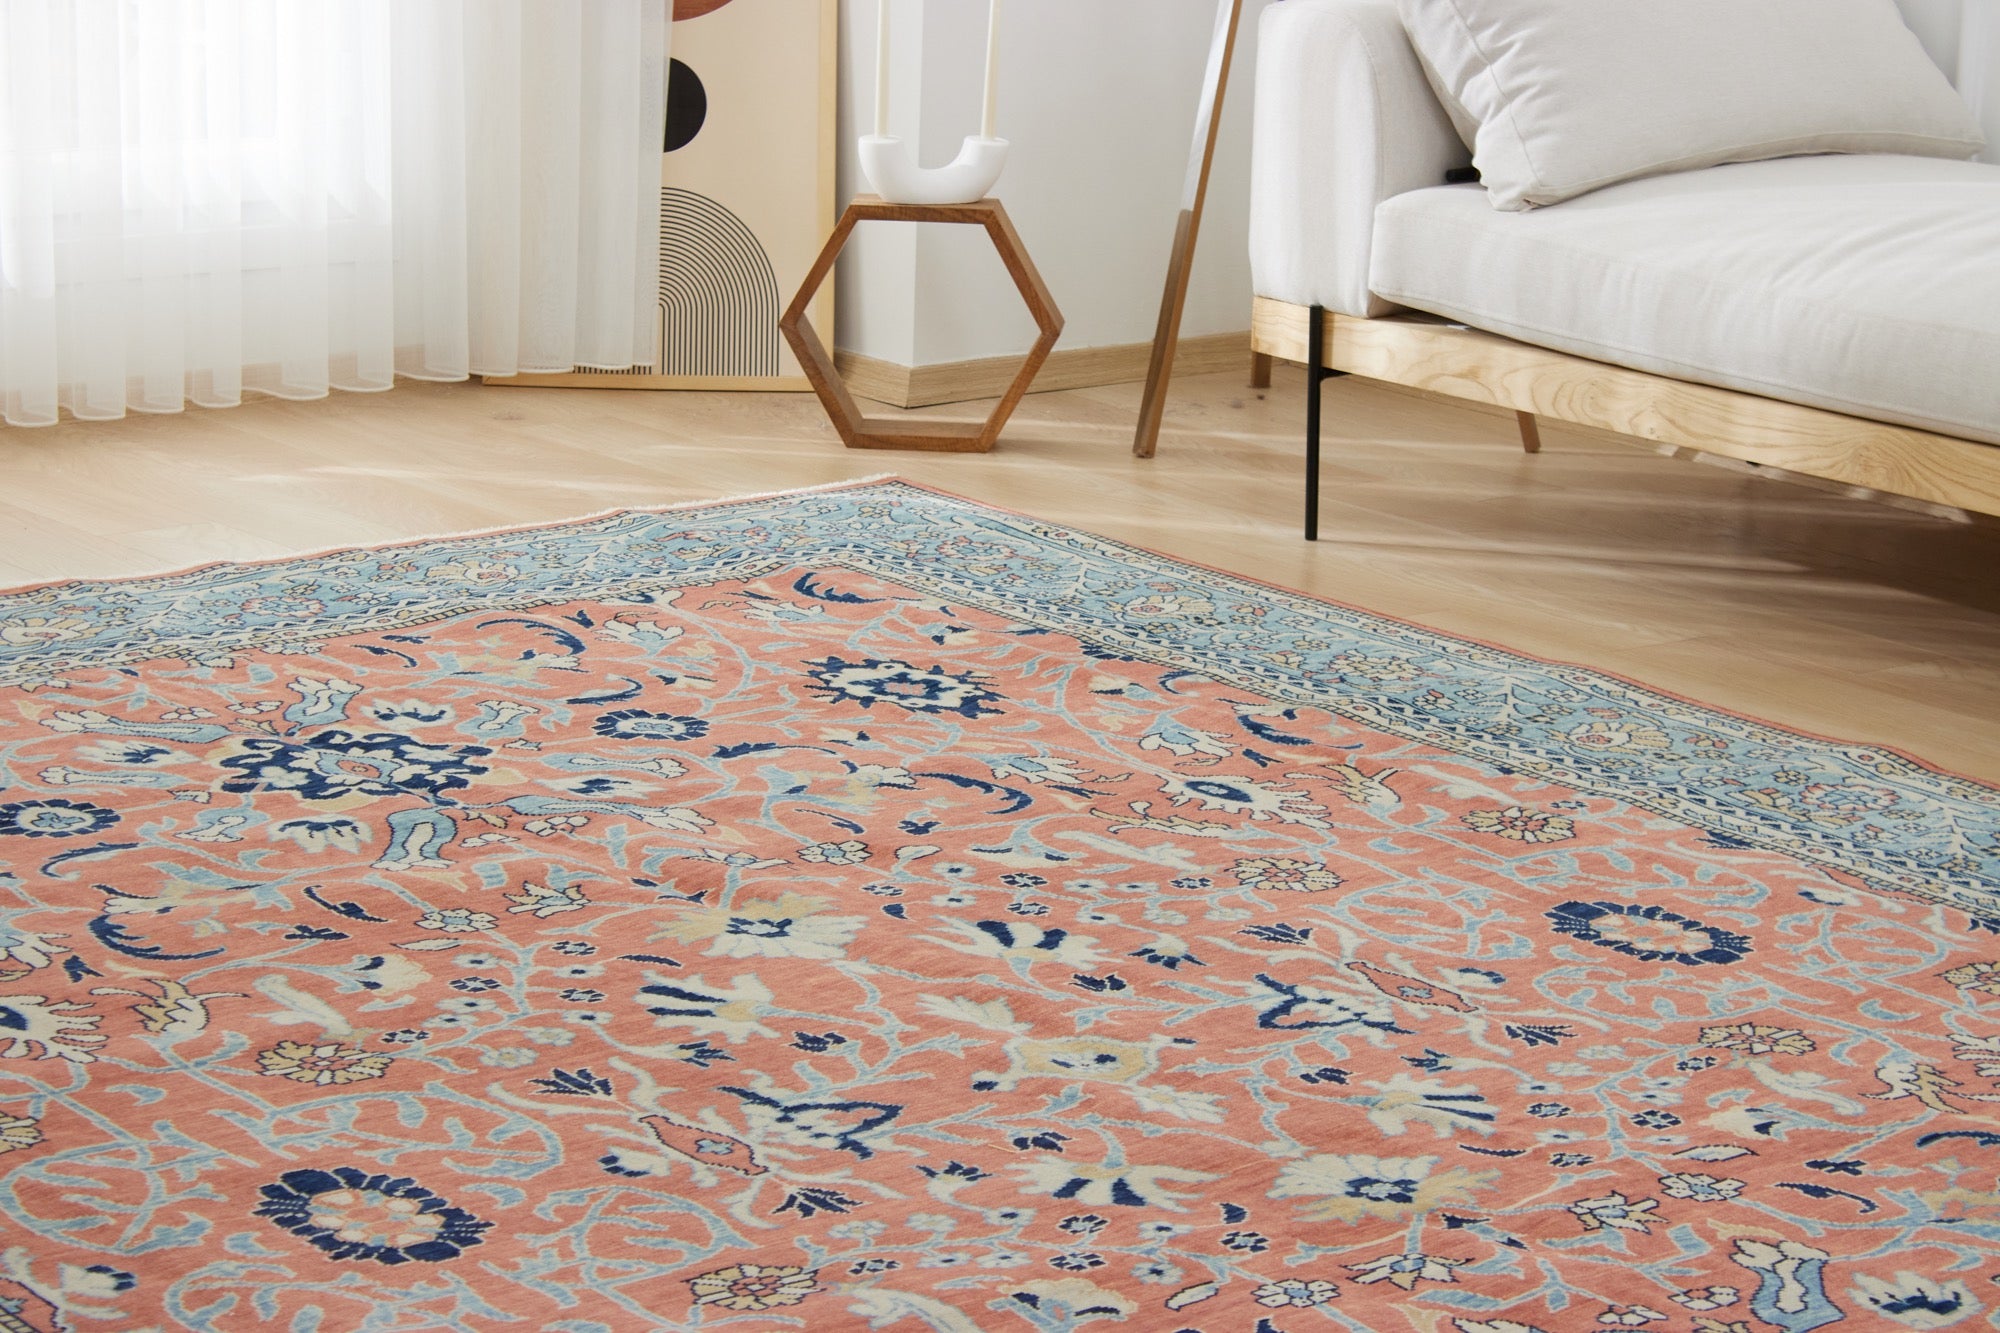 Kaysen | New Vintage-Inspired Artisan Carpet | Kuden Rugs